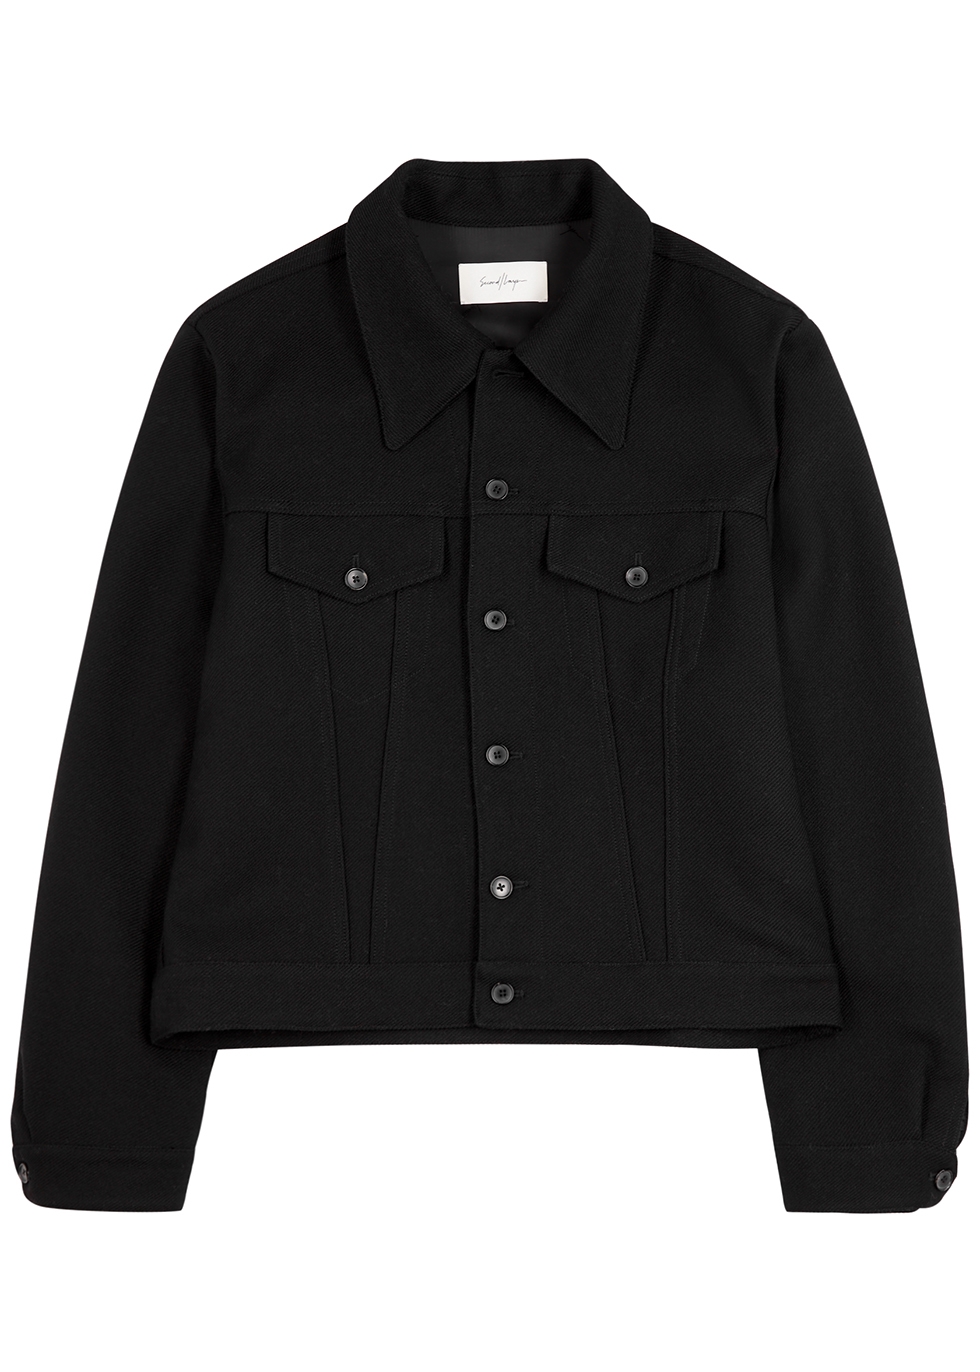 Maccha black wool-blend jacket